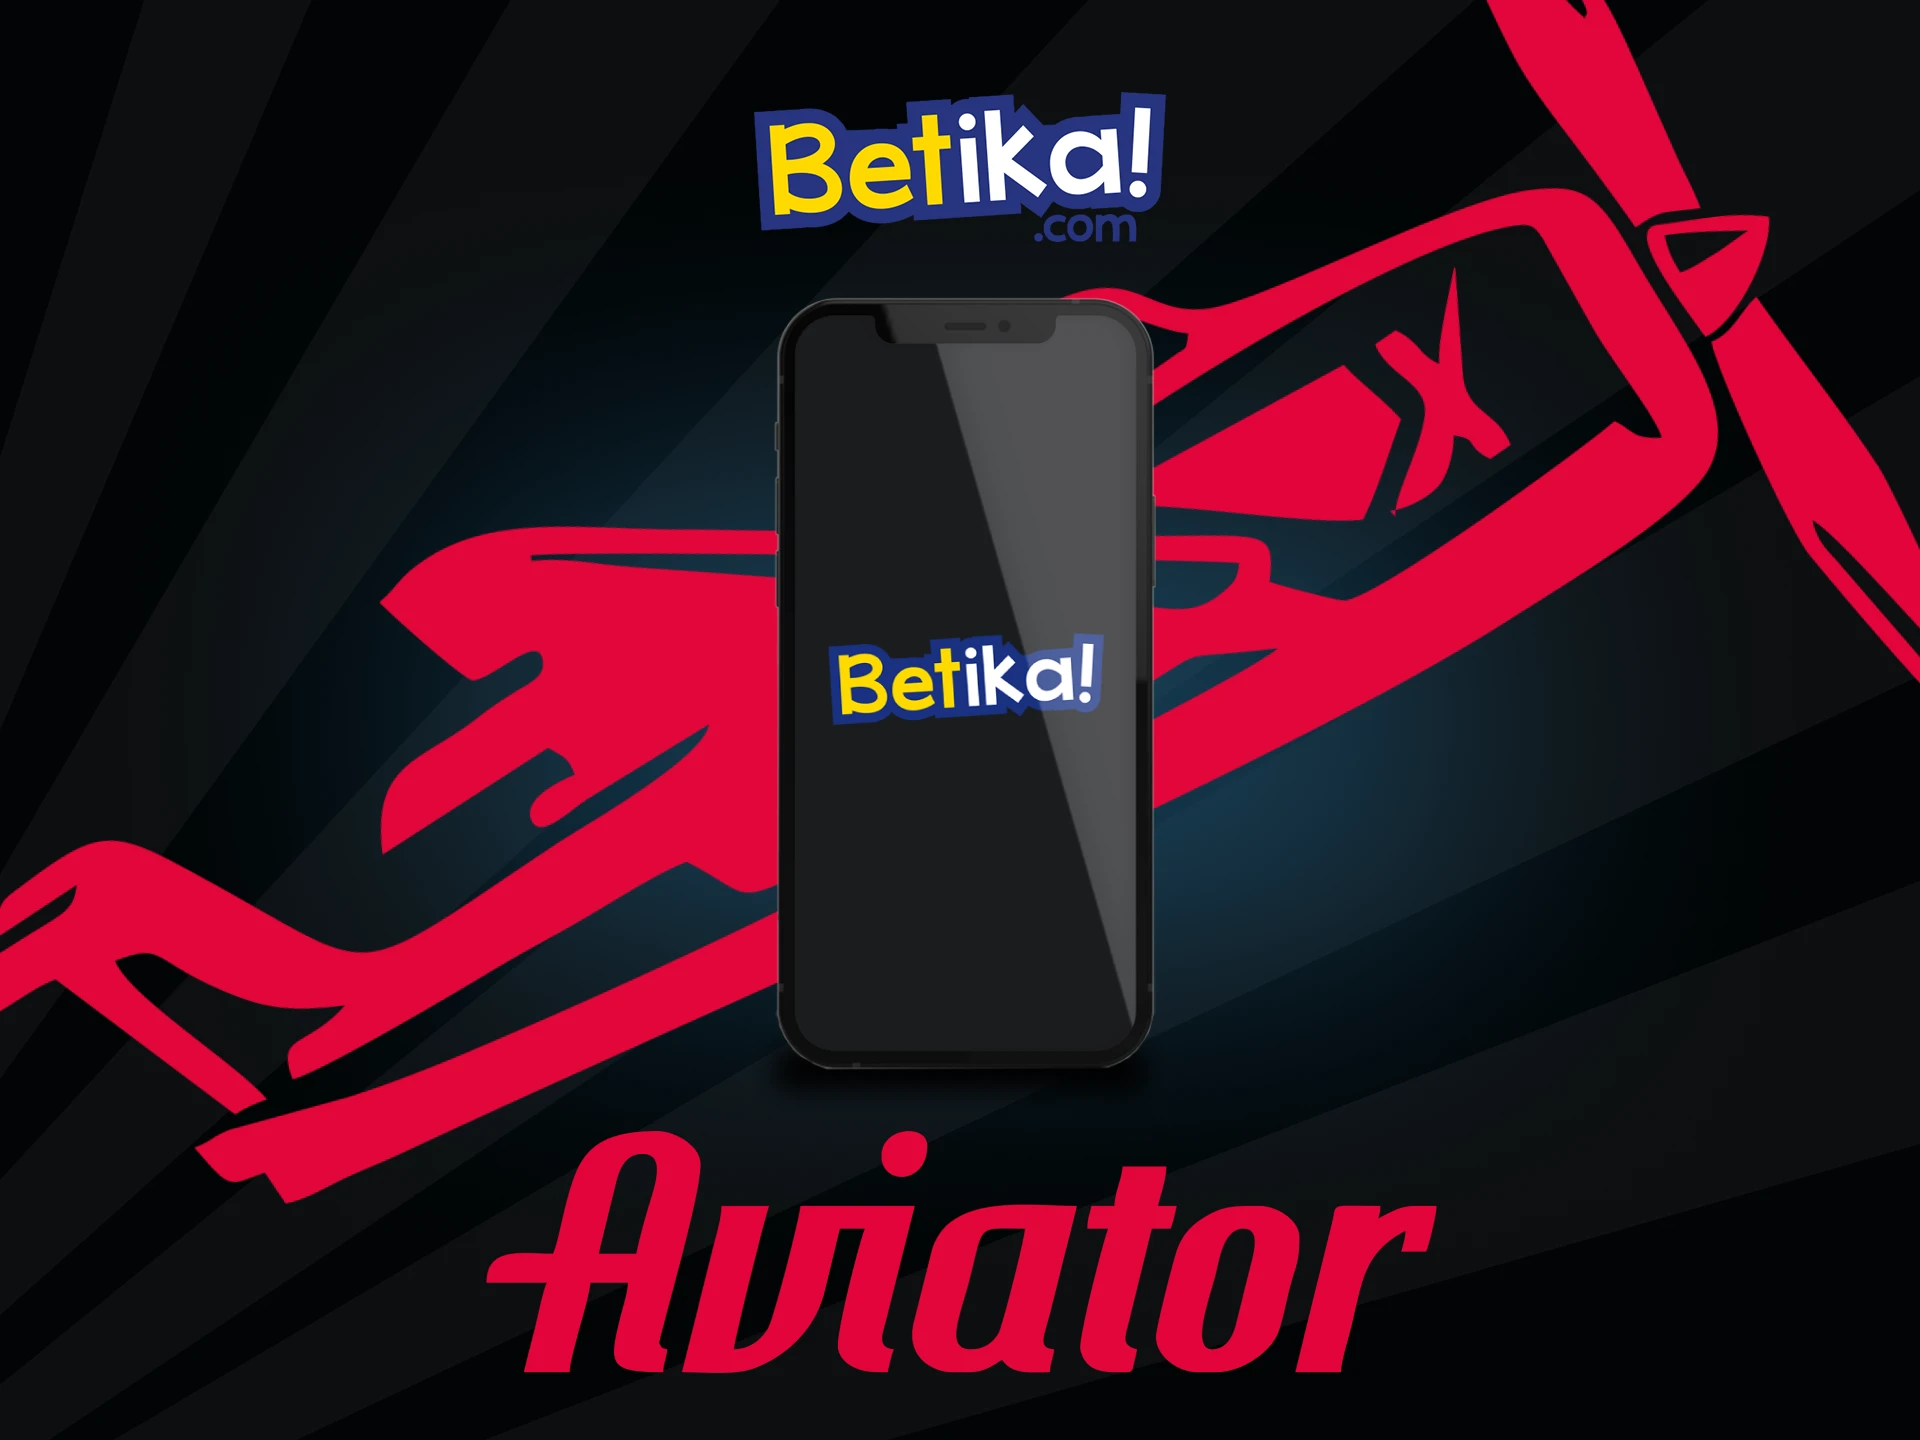 Baixe o aplicativo Betika em seu smartphone para jogar Aviator.